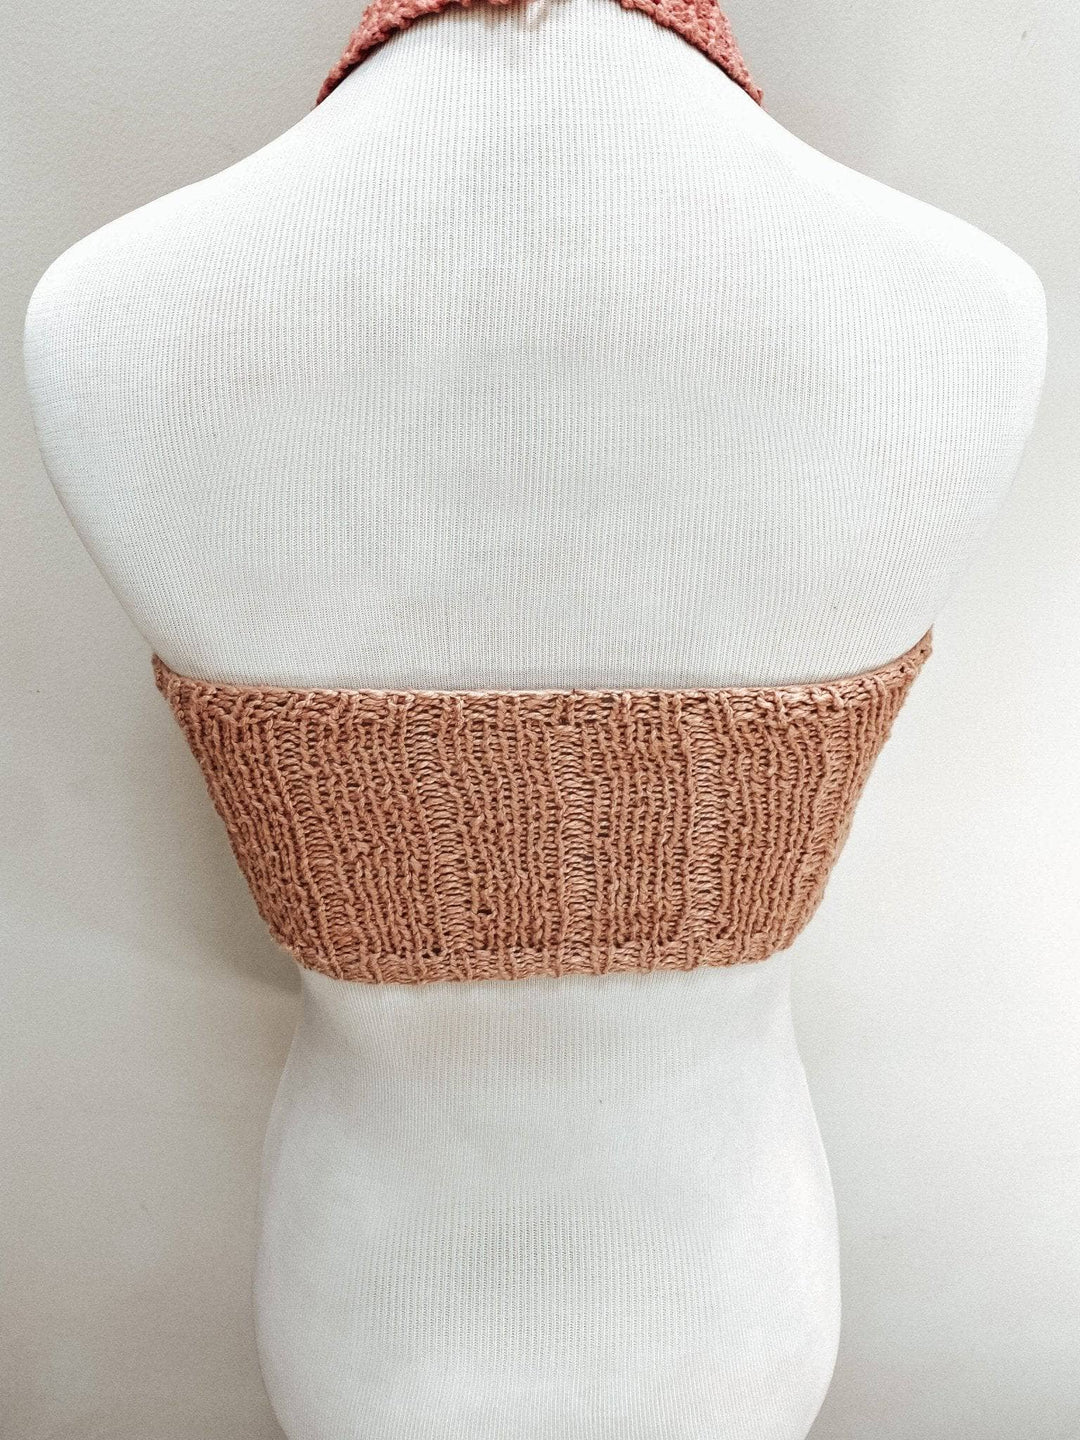 Coconut Tree Bralette Knit Pattern